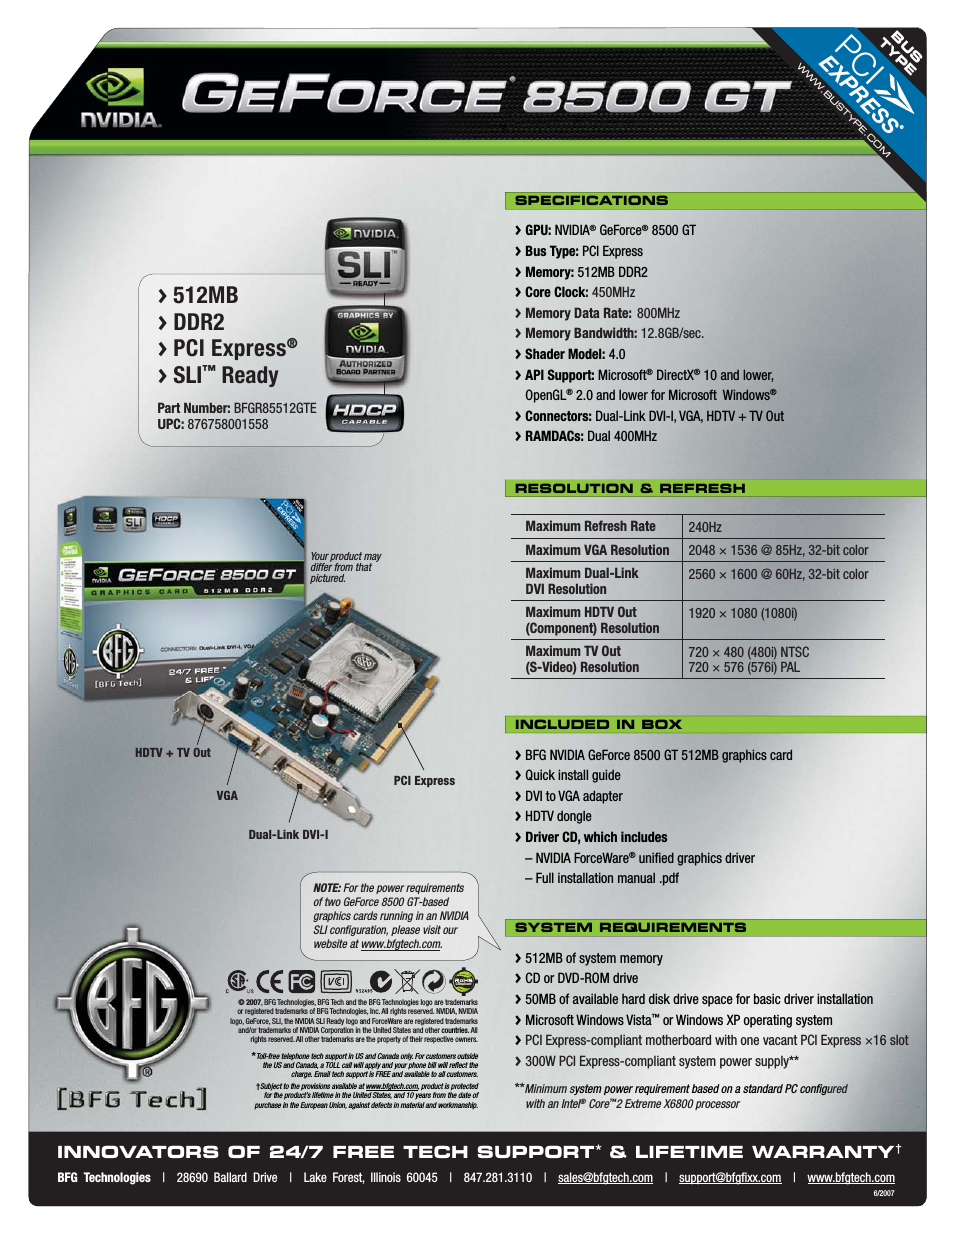 GeForce 8500 GT